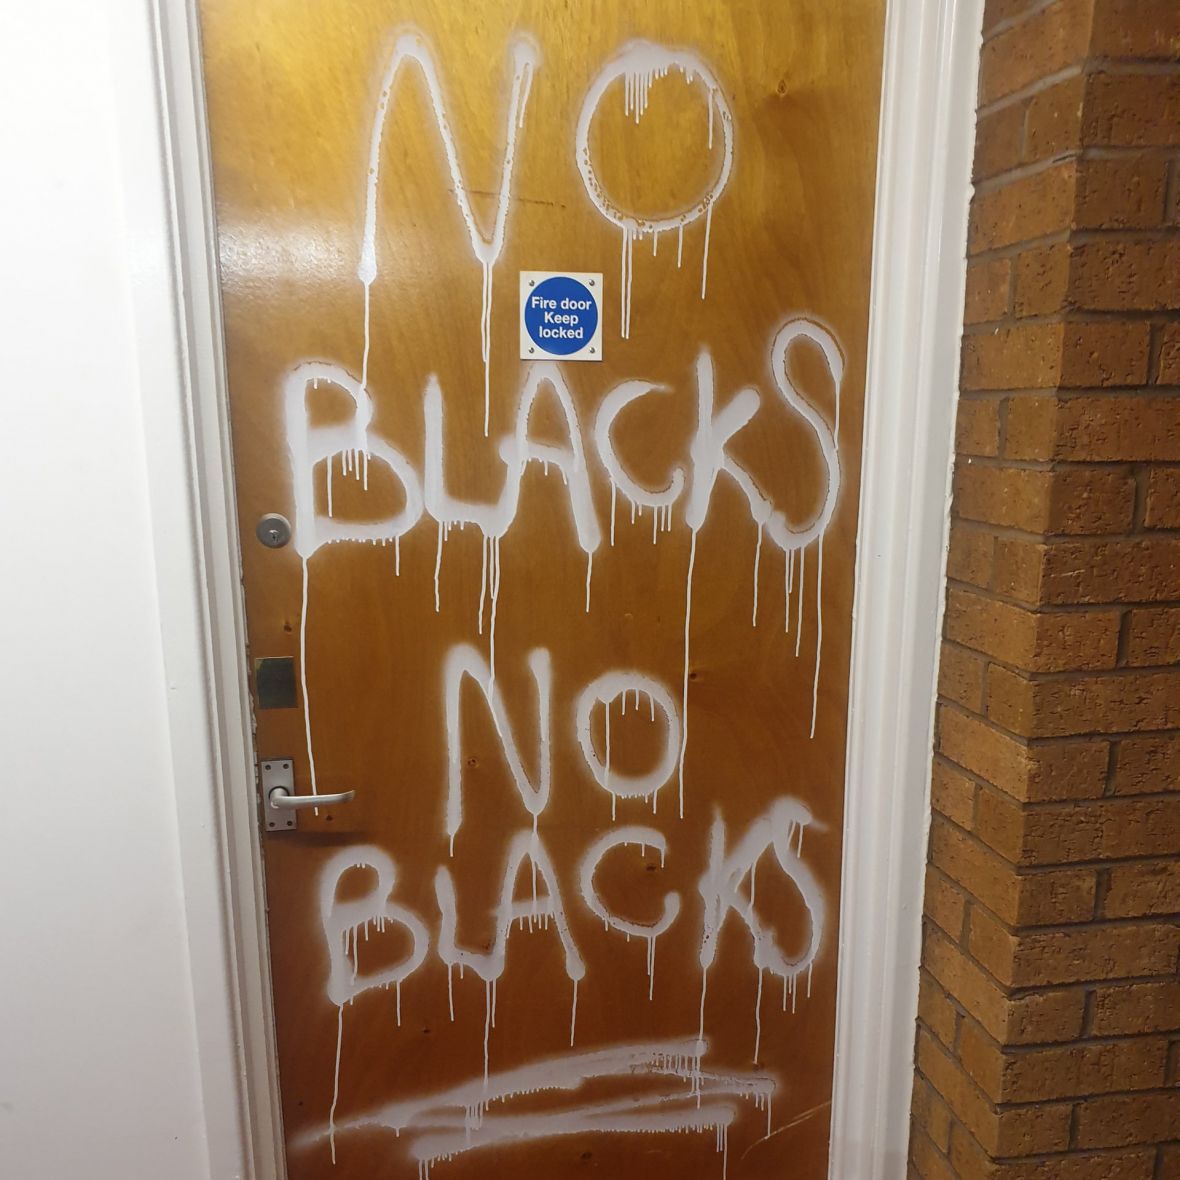 Rasistički grafiti na vratima stana - undefined